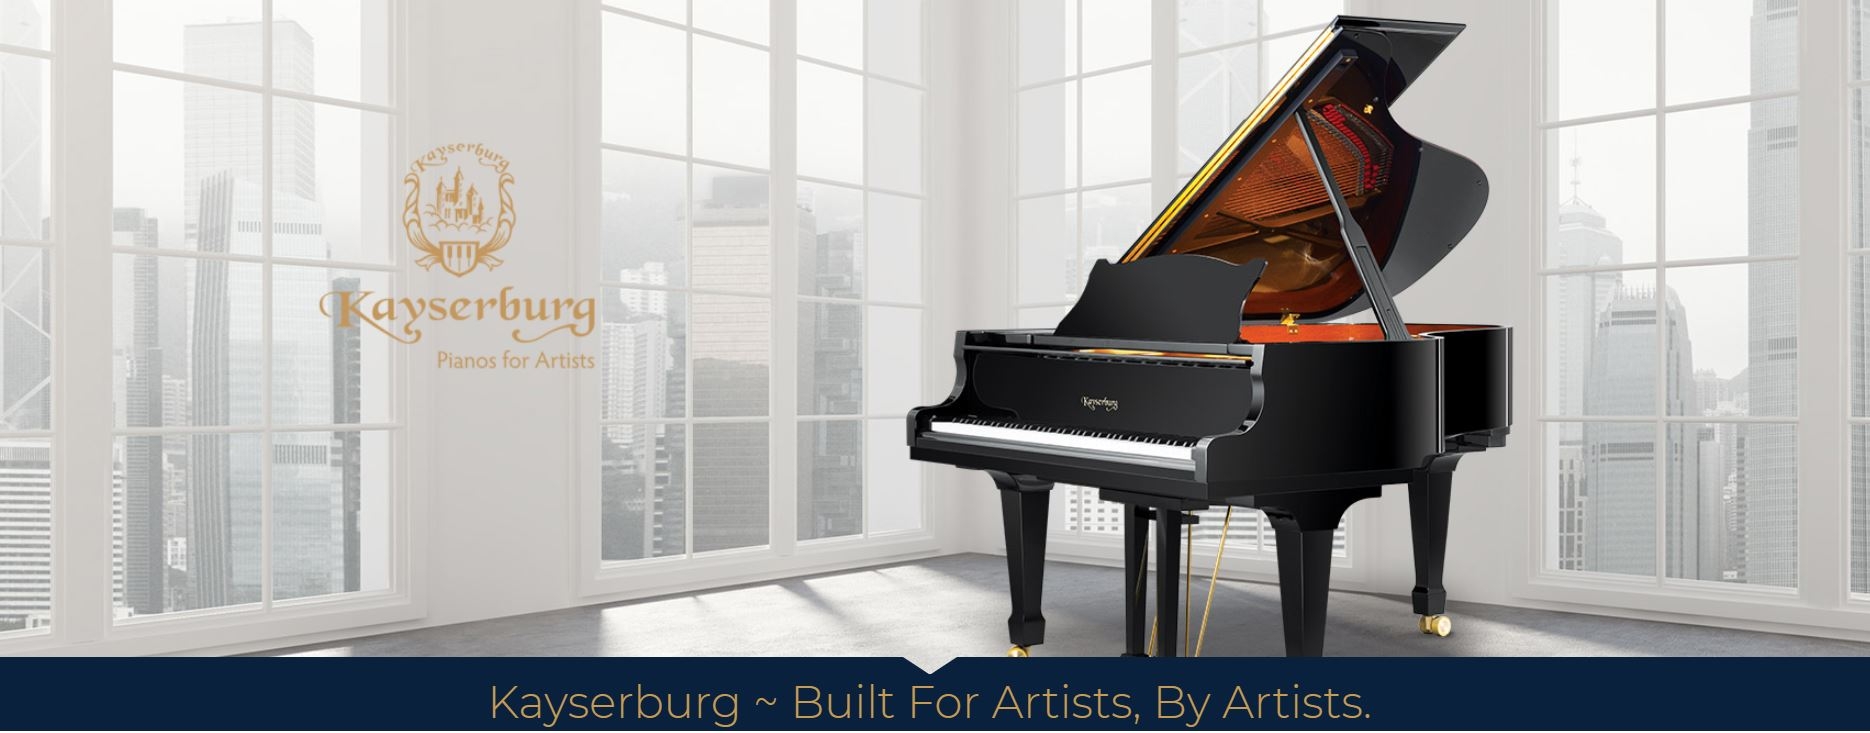 Kayserburg Artist Grand Piano 